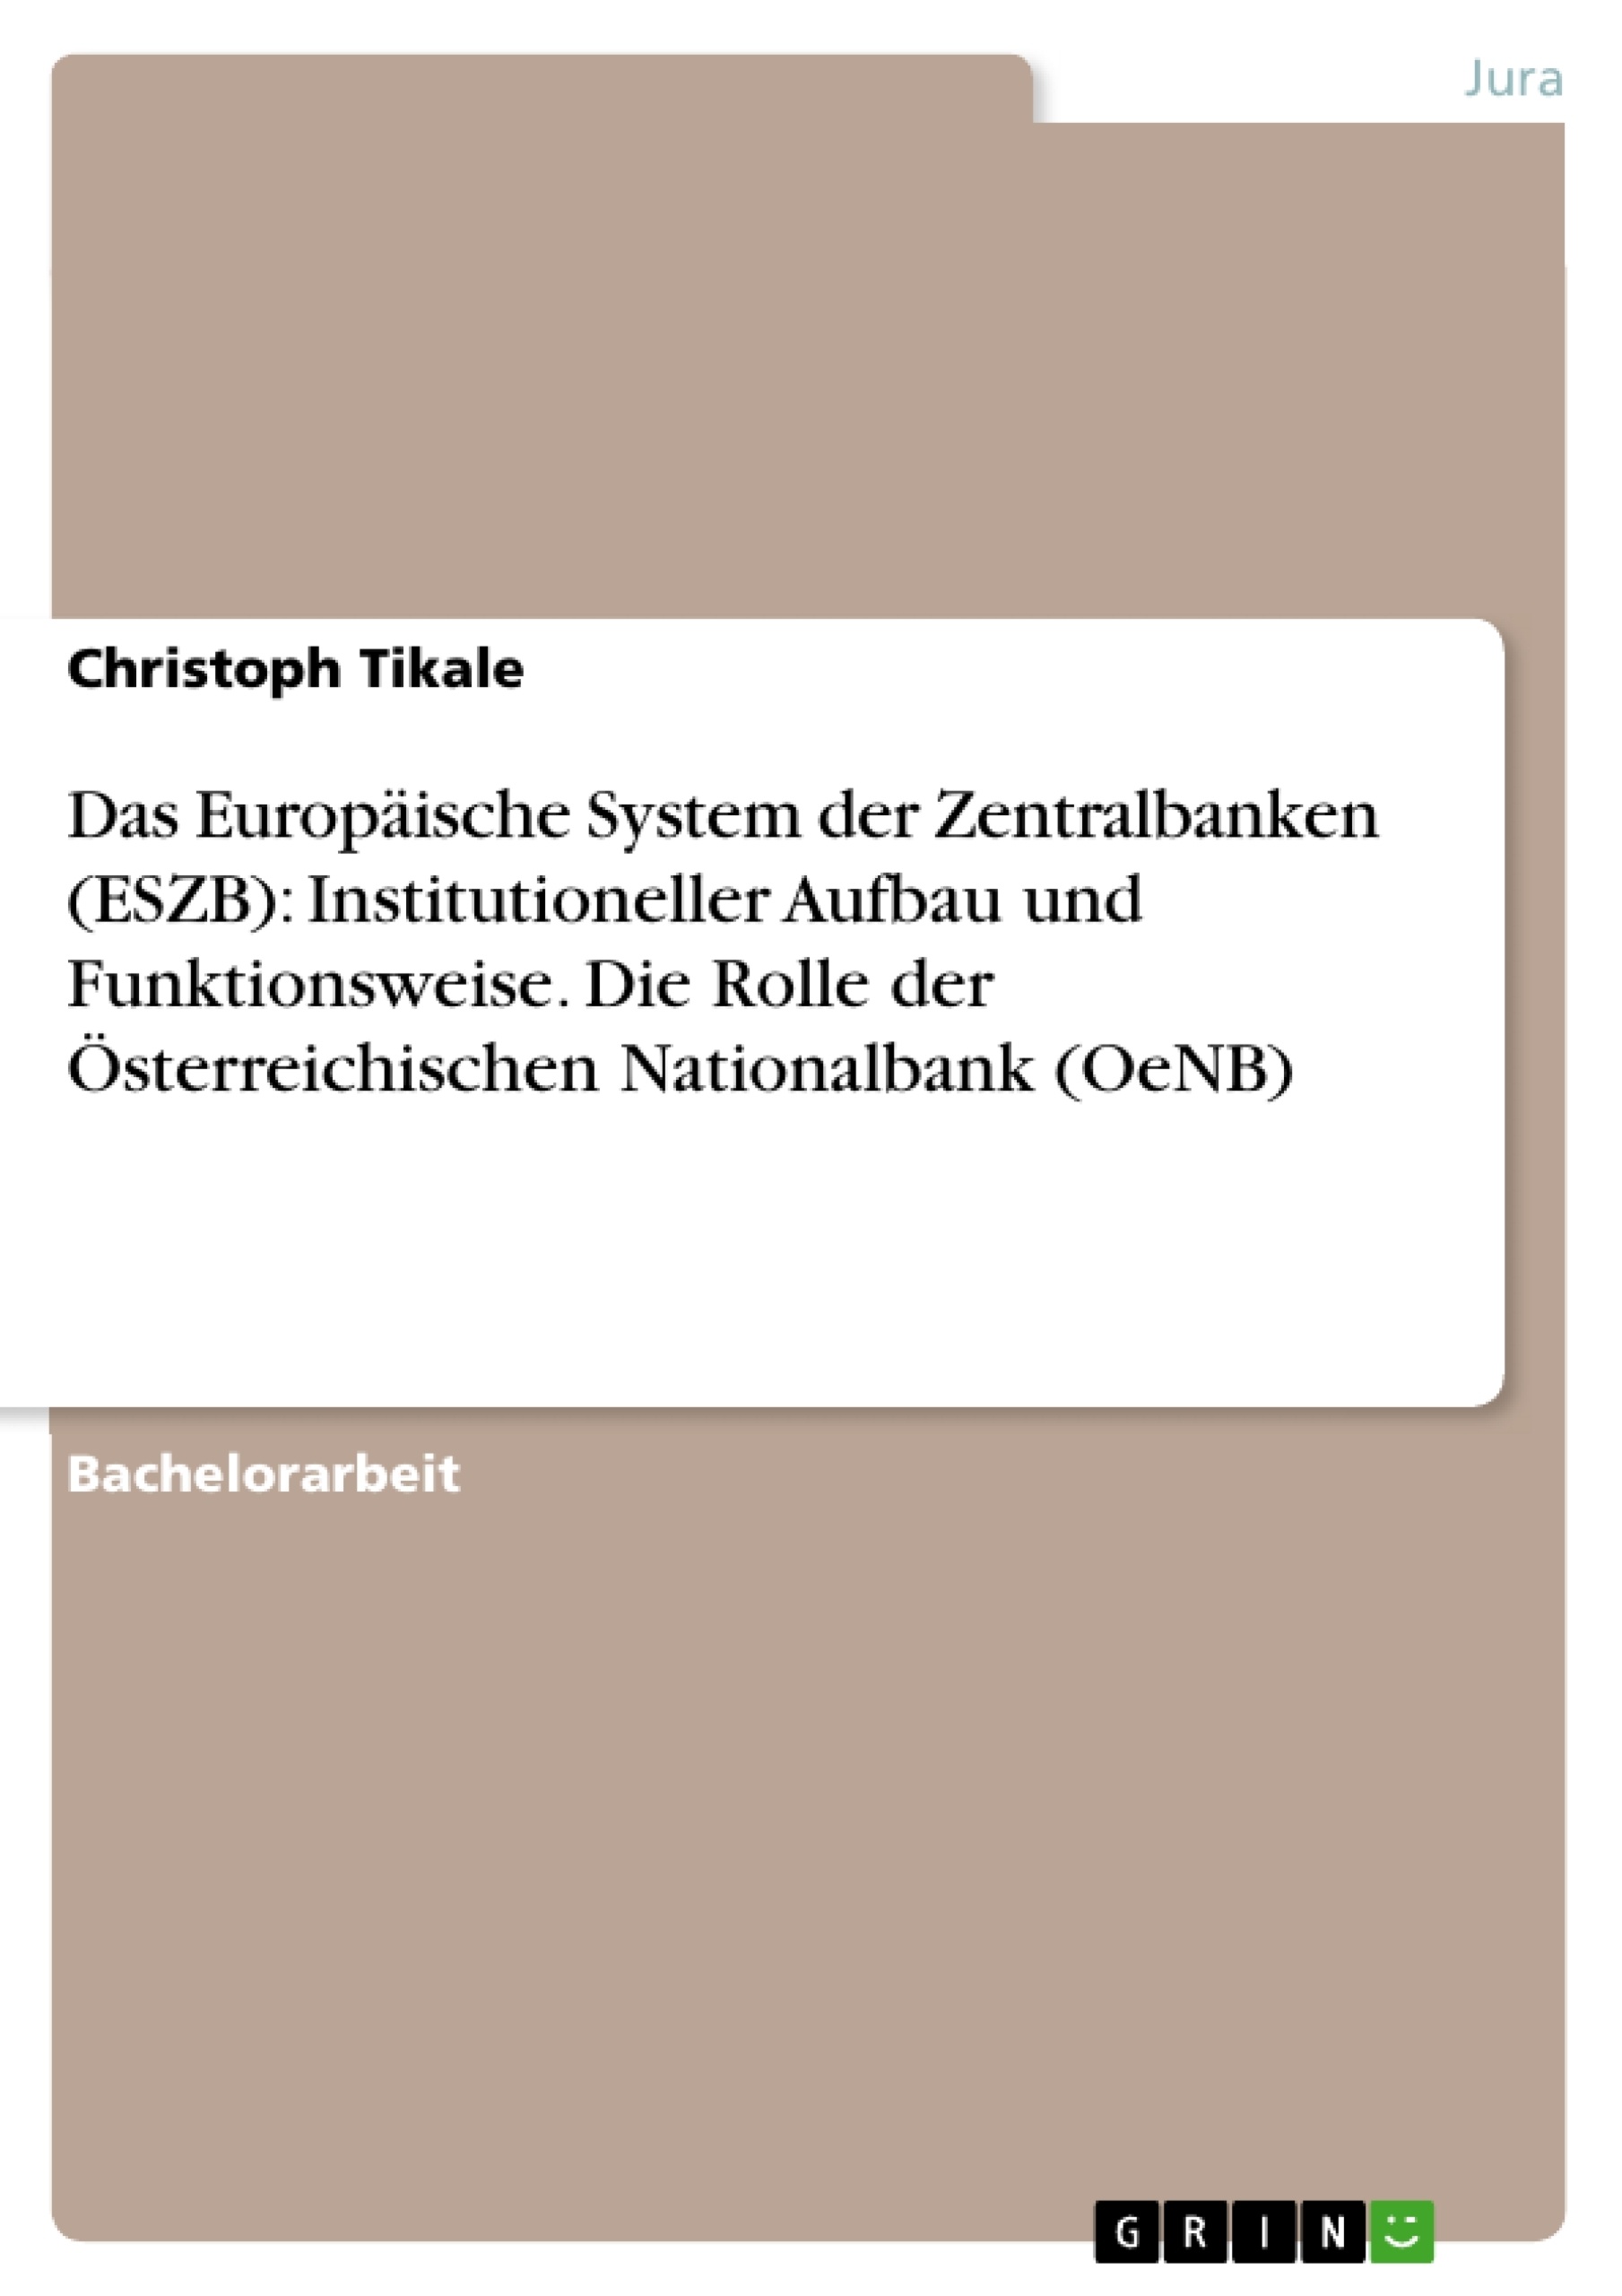 Título: Das Europäische System der Zentralbanken (ESZB): Institutioneller Aufbau und Funktionsweise. Die Rolle der Österreichischen Nationalbank (OeNB)